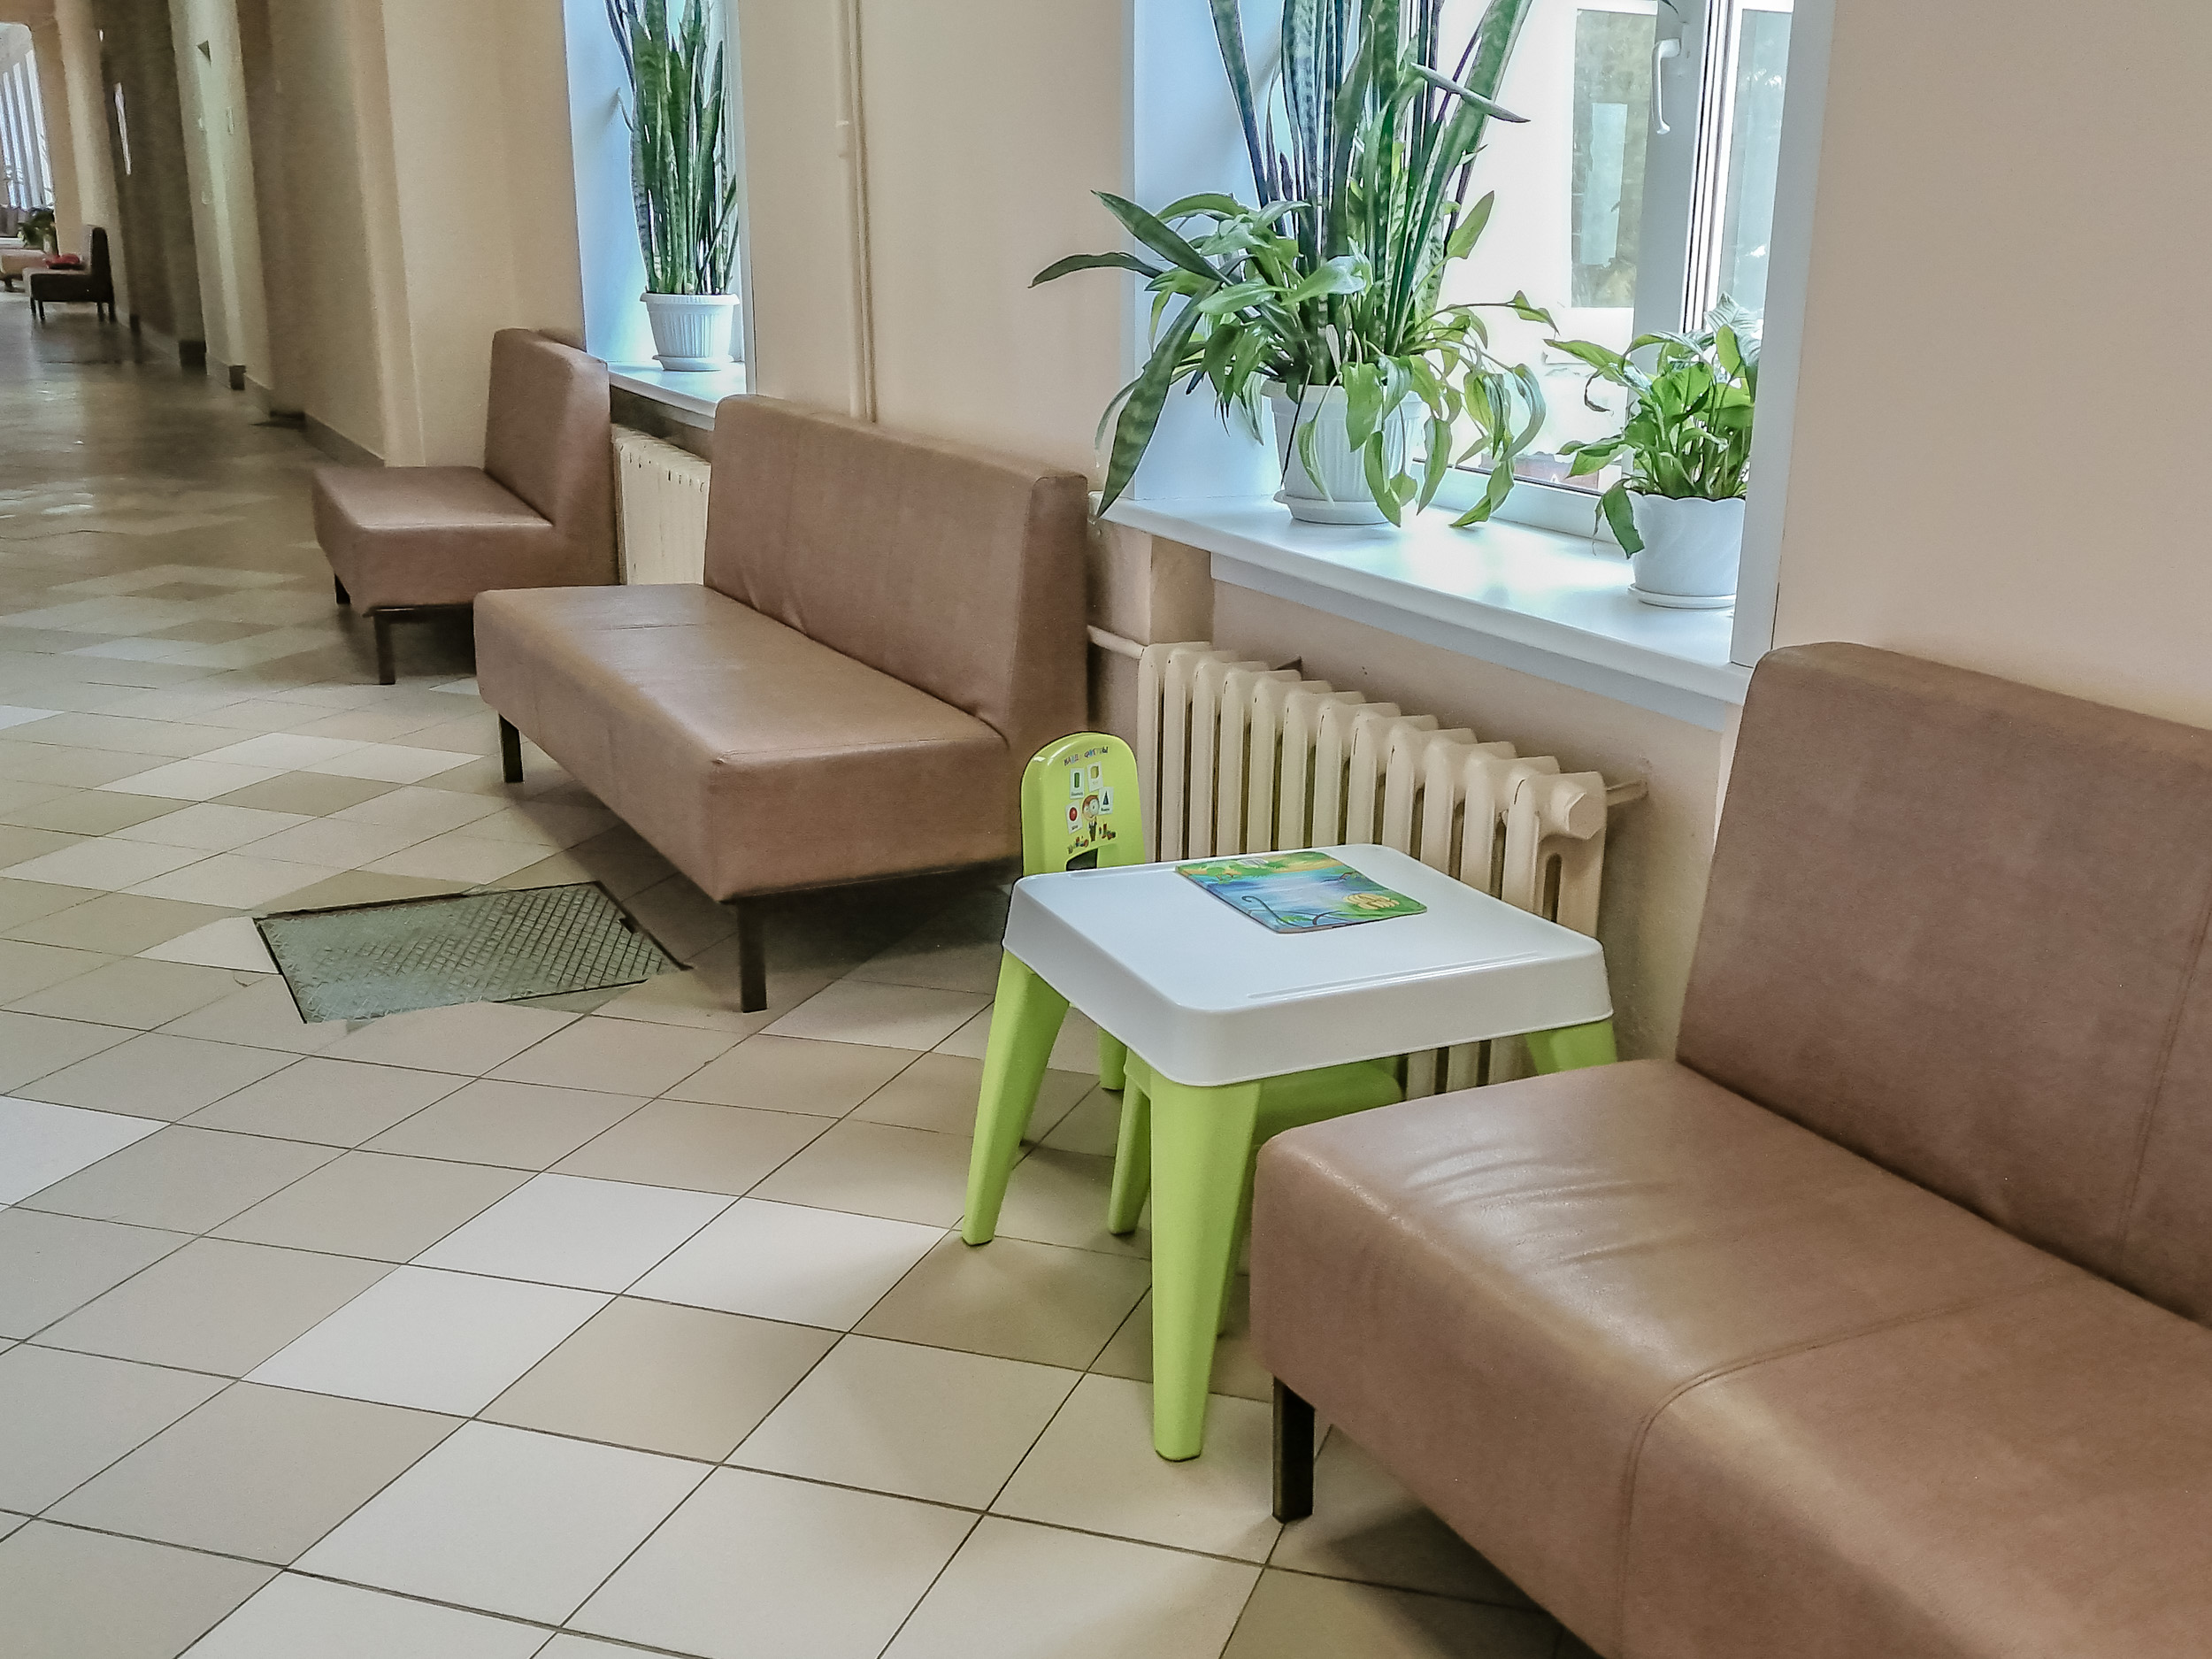 Северодвинская женская консультация приступила к профосмотрам маленьких пациенток